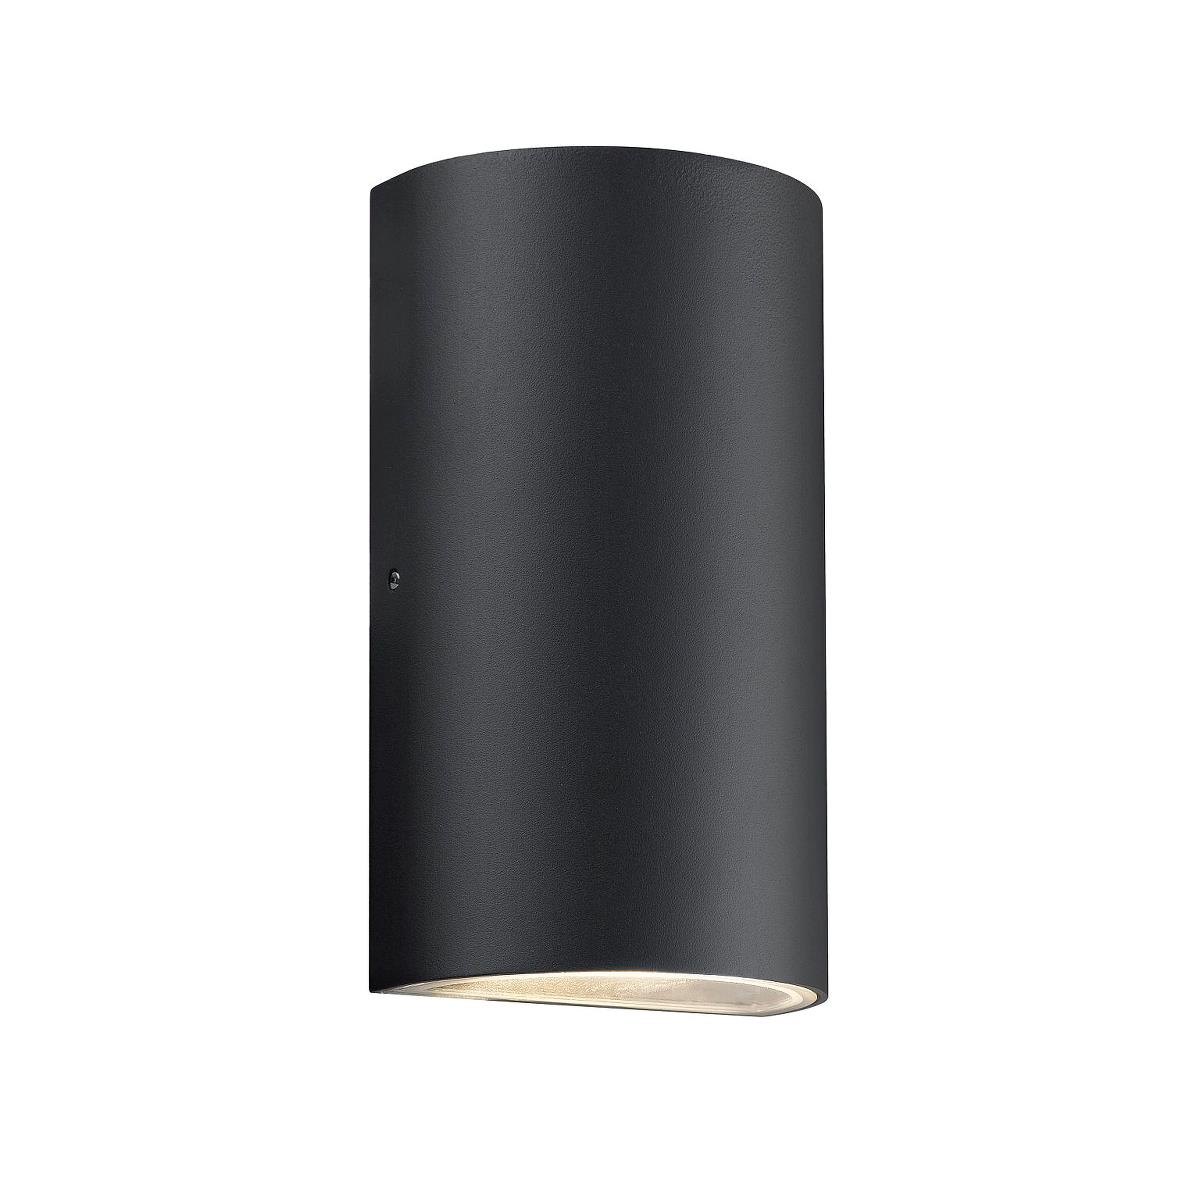 Nordlux Rold halbrund Wandleuchte Aussen LED 2x 375lm schwarz unter Wandleuchten > Auenleuchten > Beleuchtung